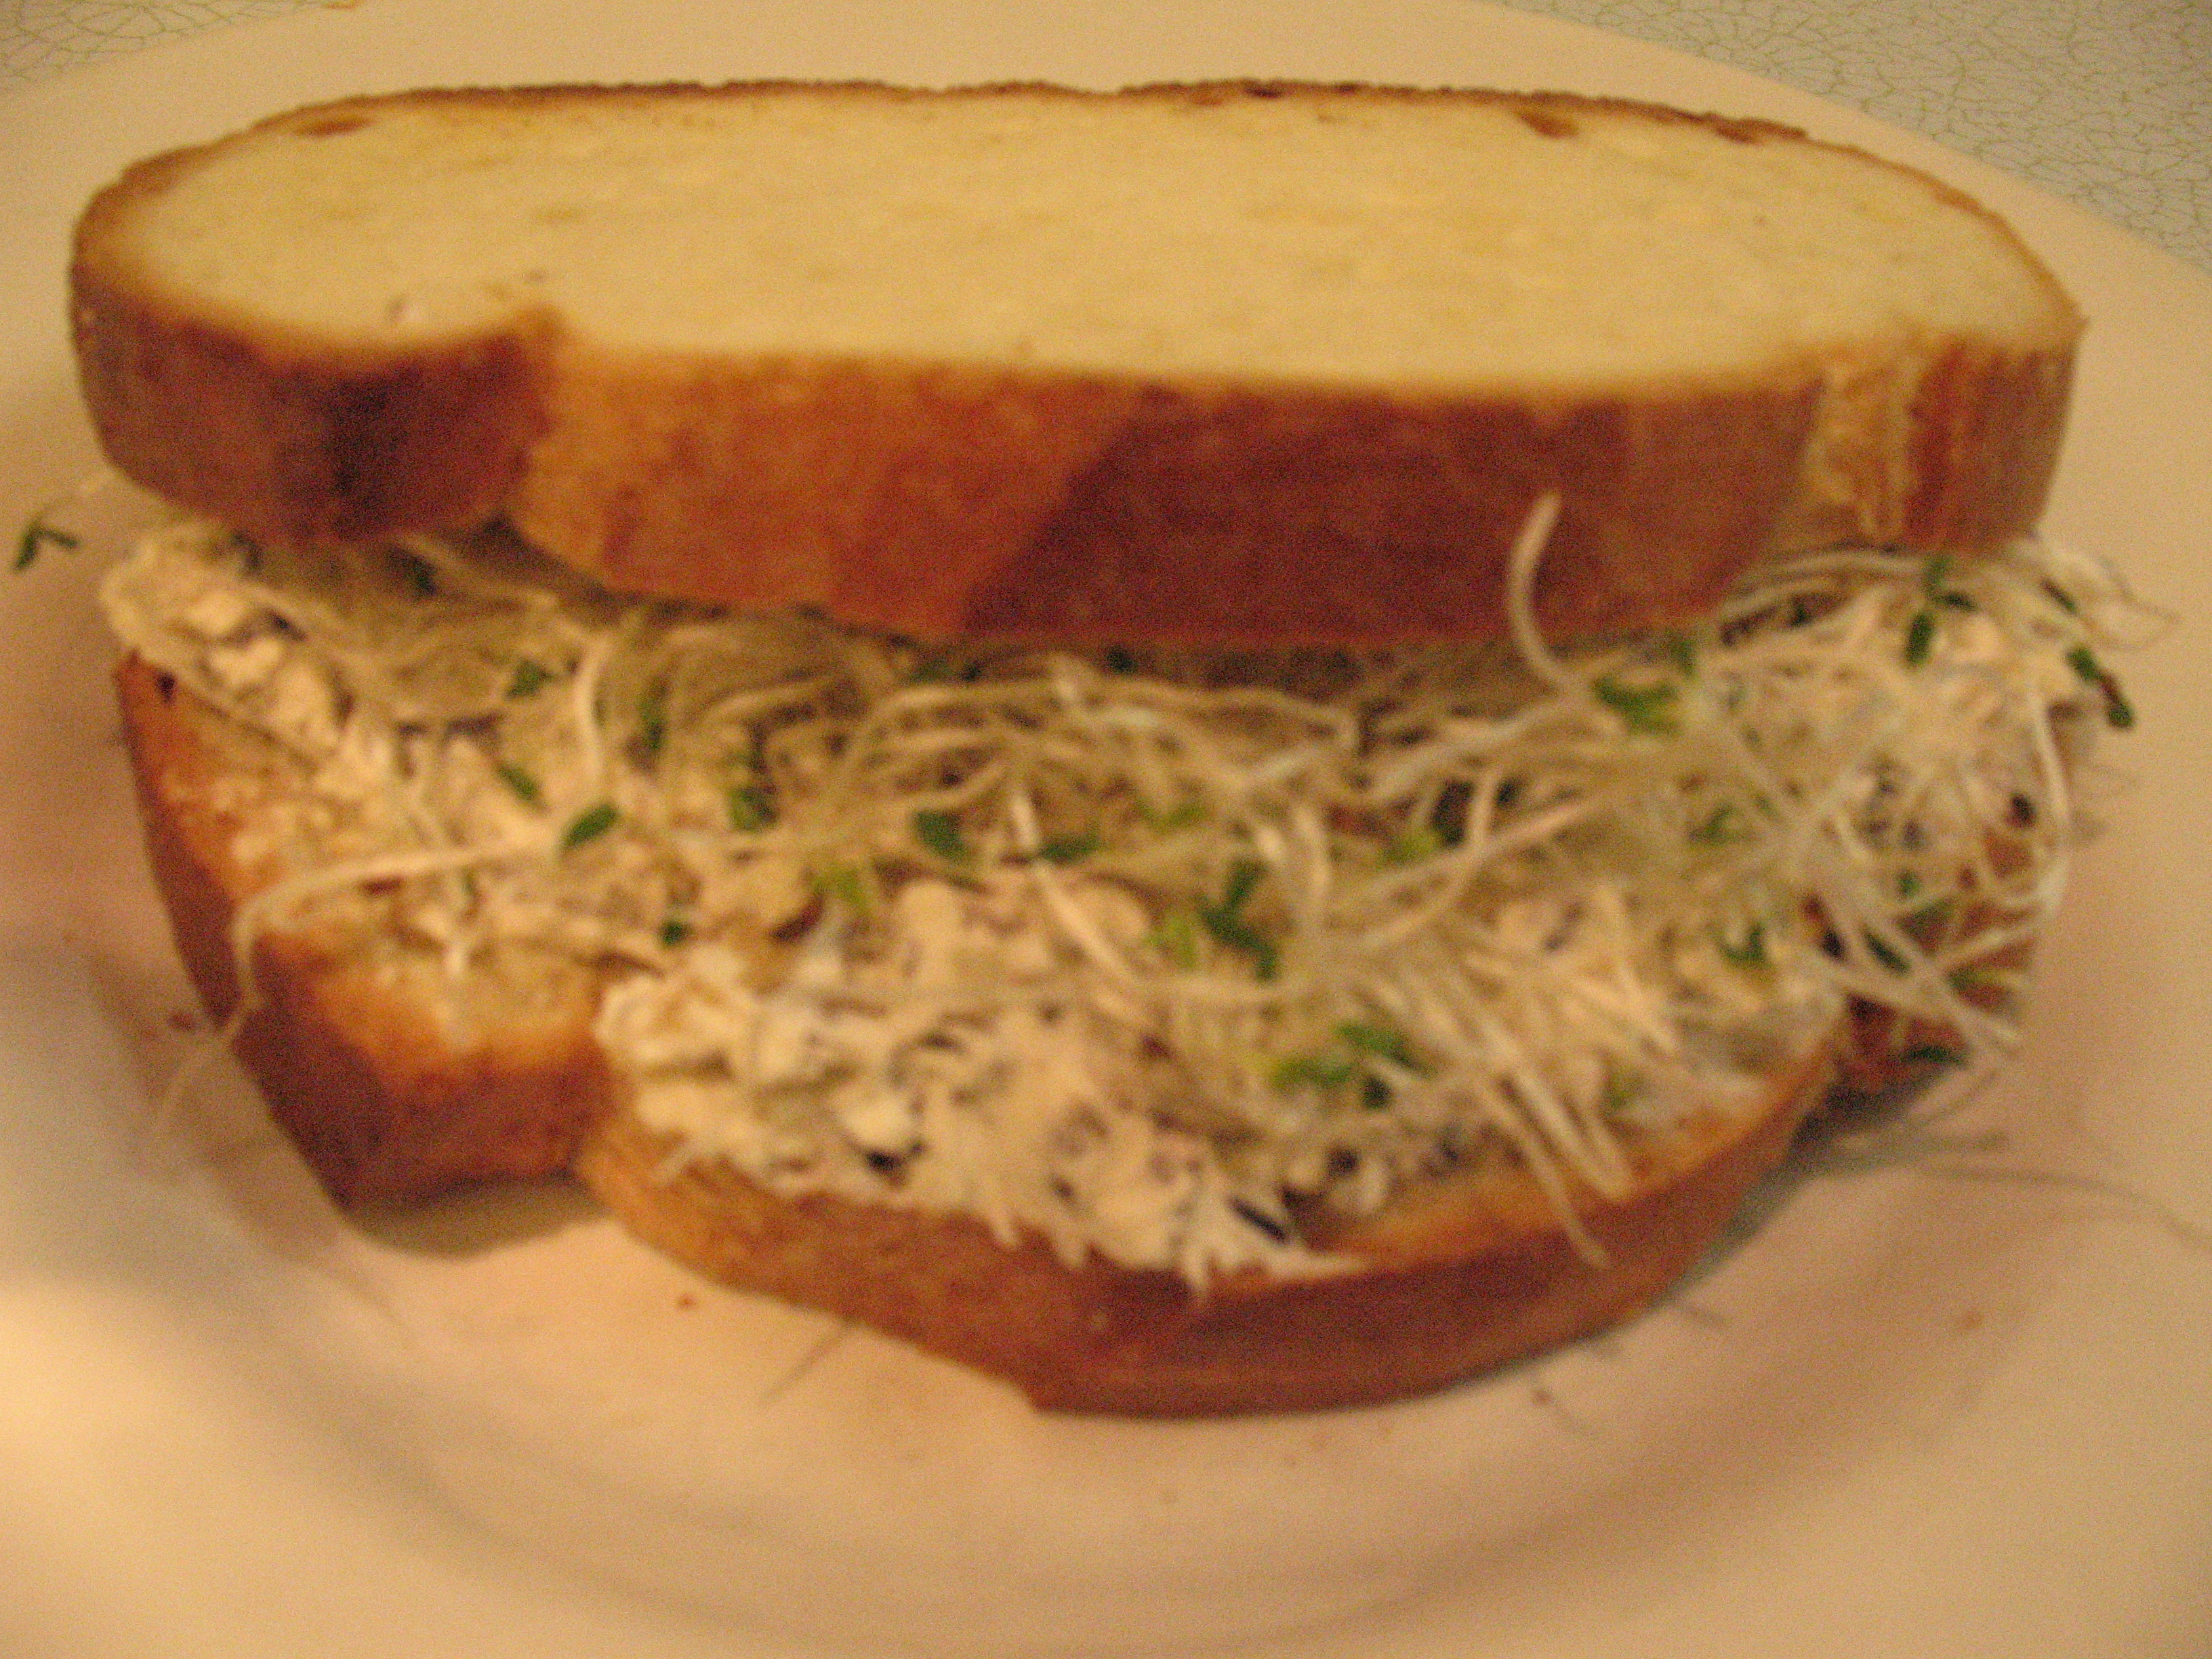 alfalfa sprouts sandwich